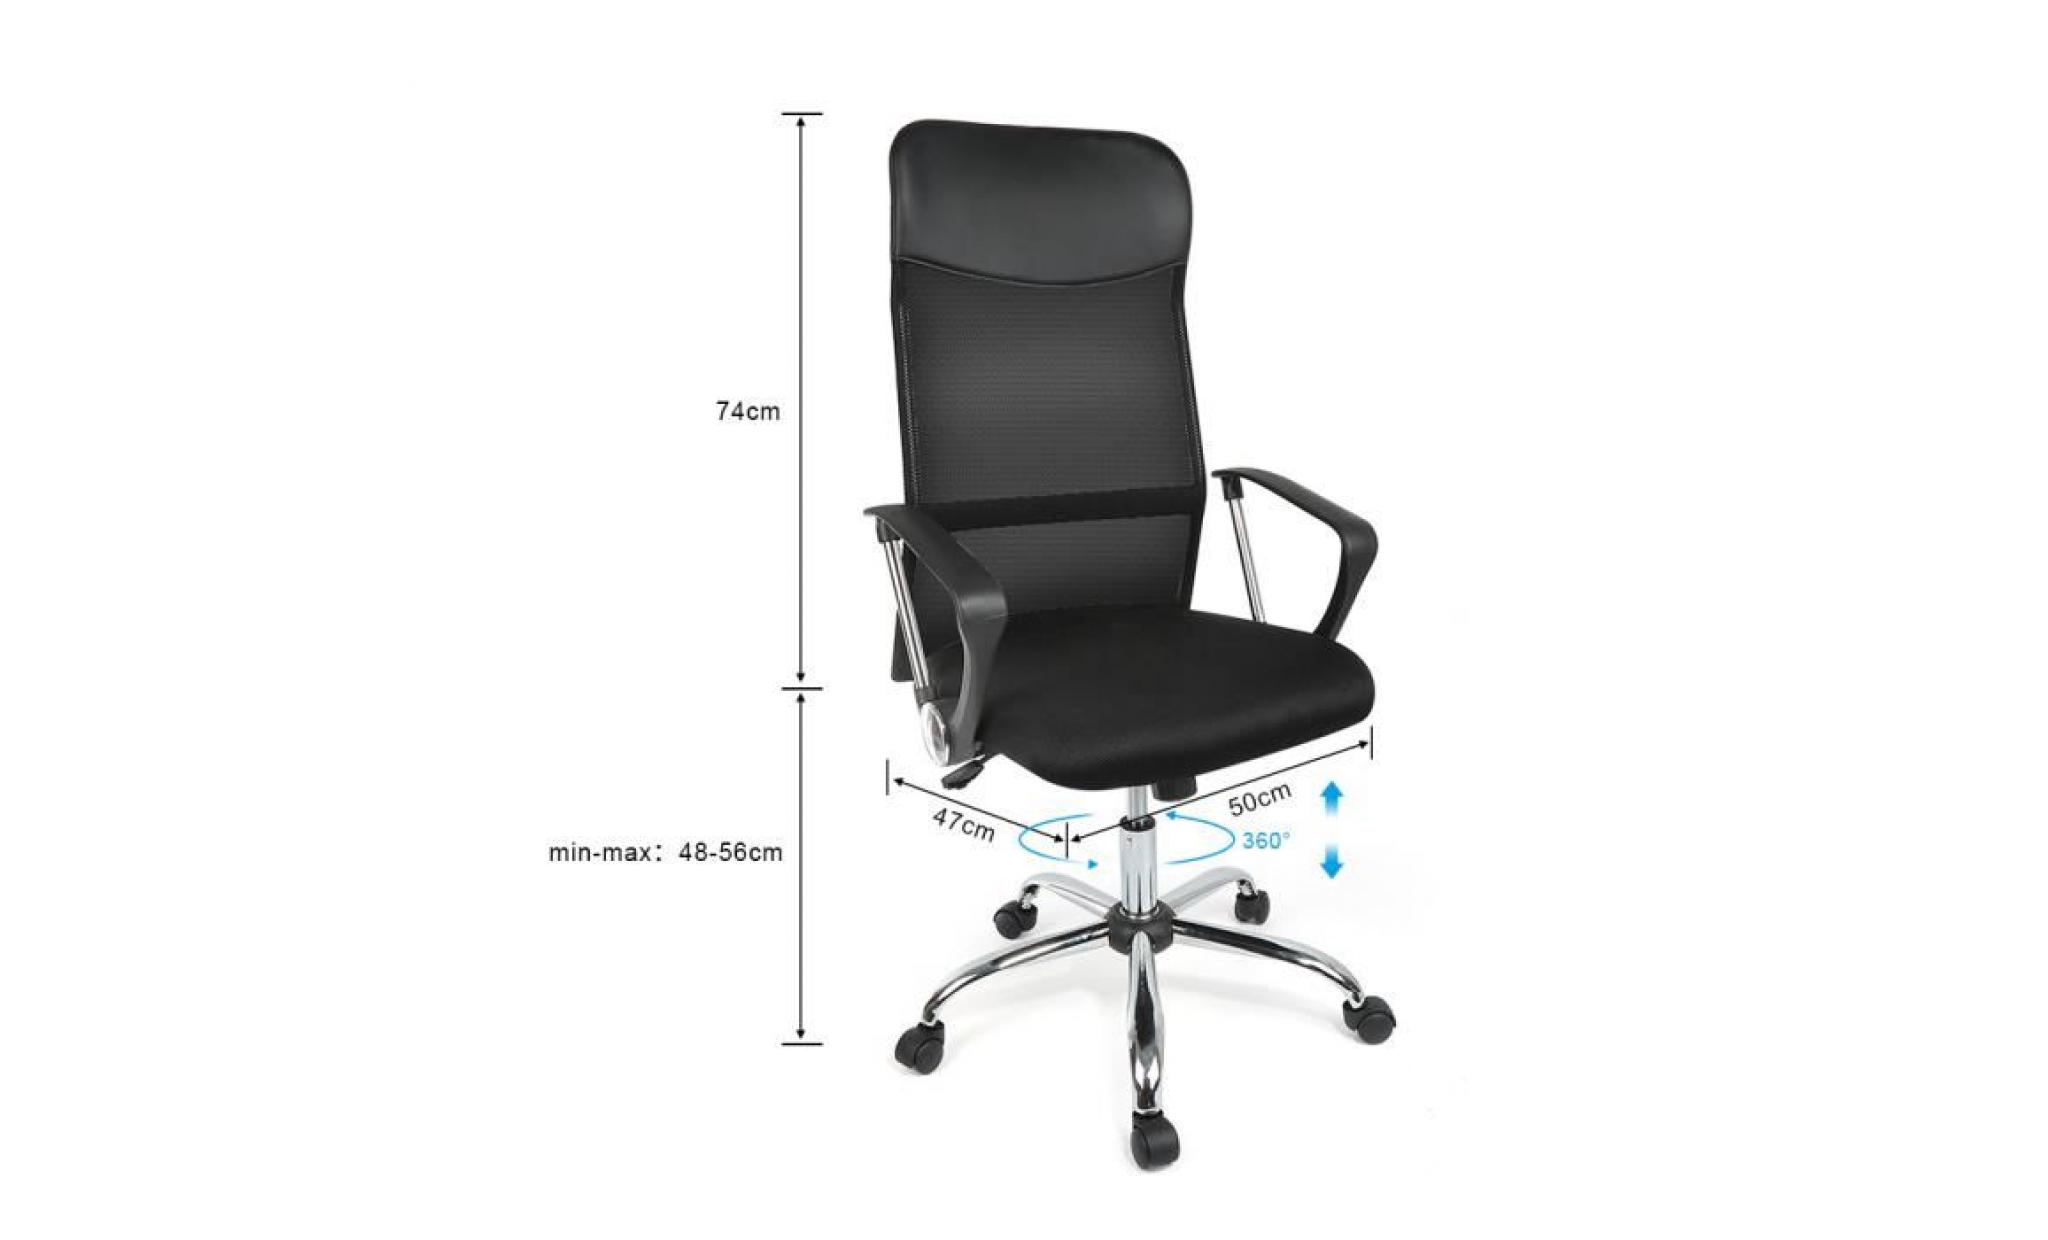 luxs chaise de bureau pivotant fauteuil de bureau 48 56cm noir pas cher